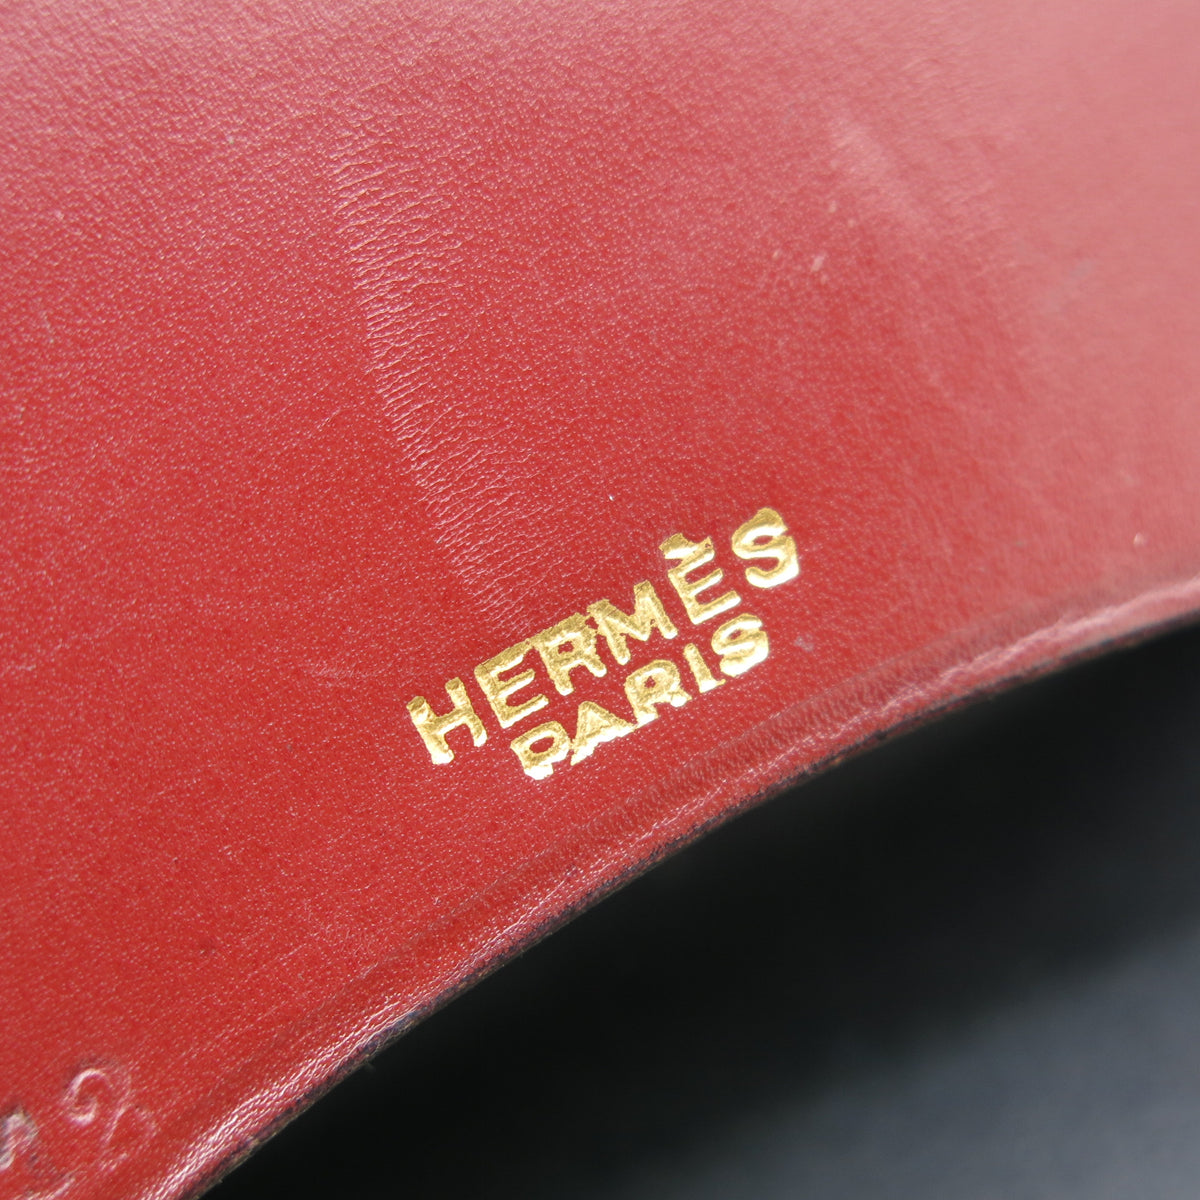 Hermès ashtray - Signé P.Dupré-Lafon